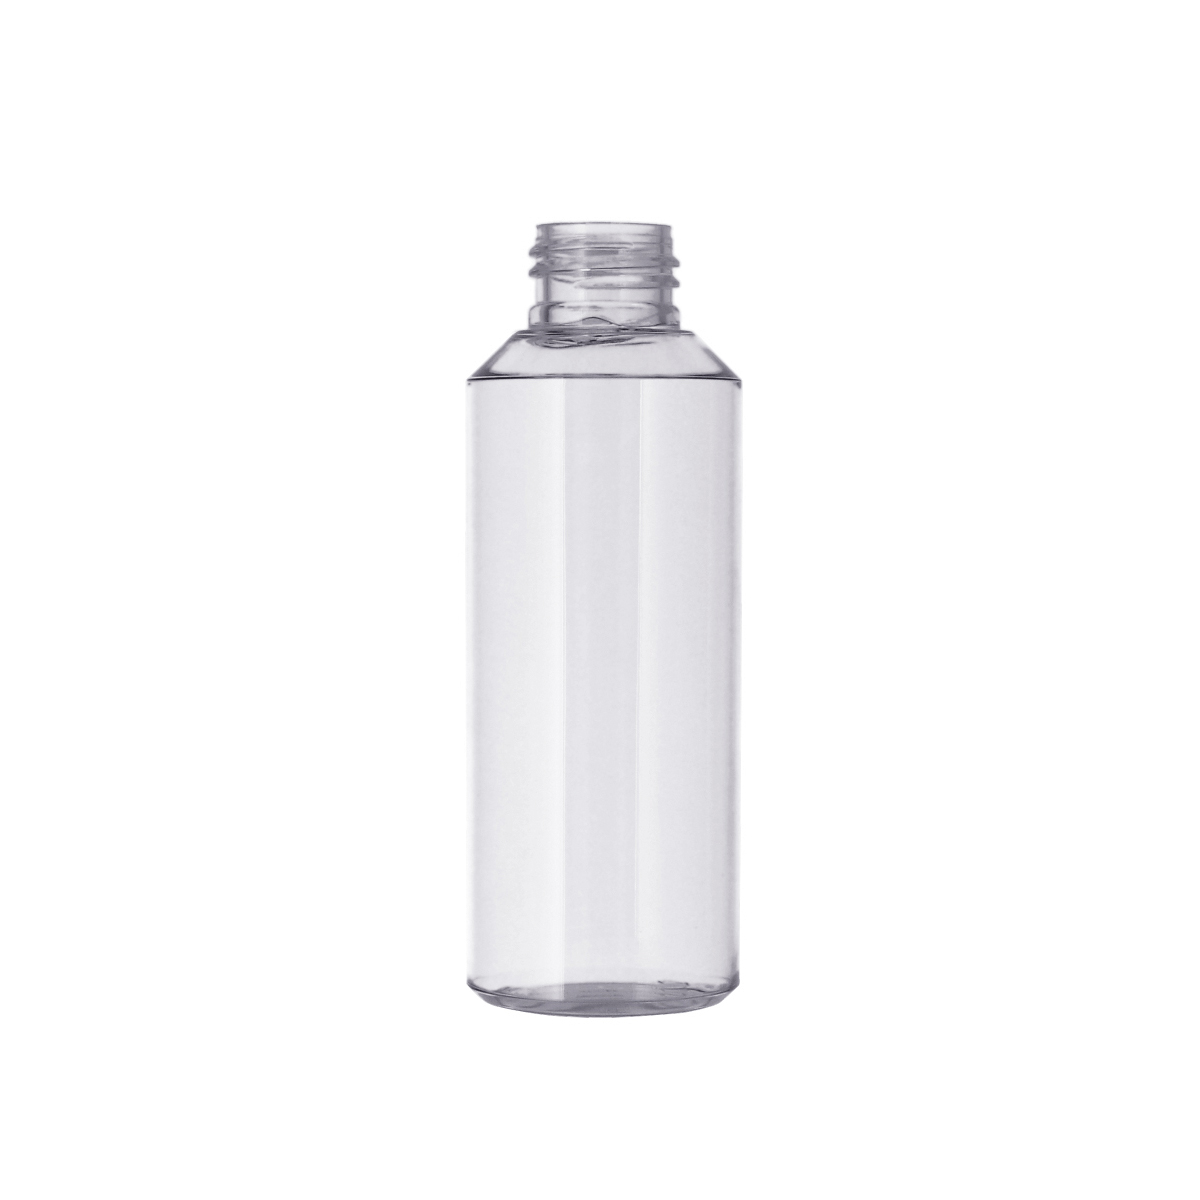 PETG瓶,101-250ml,PETG瓶,臉部保養品,洗髮精,沐浴乳,乳液